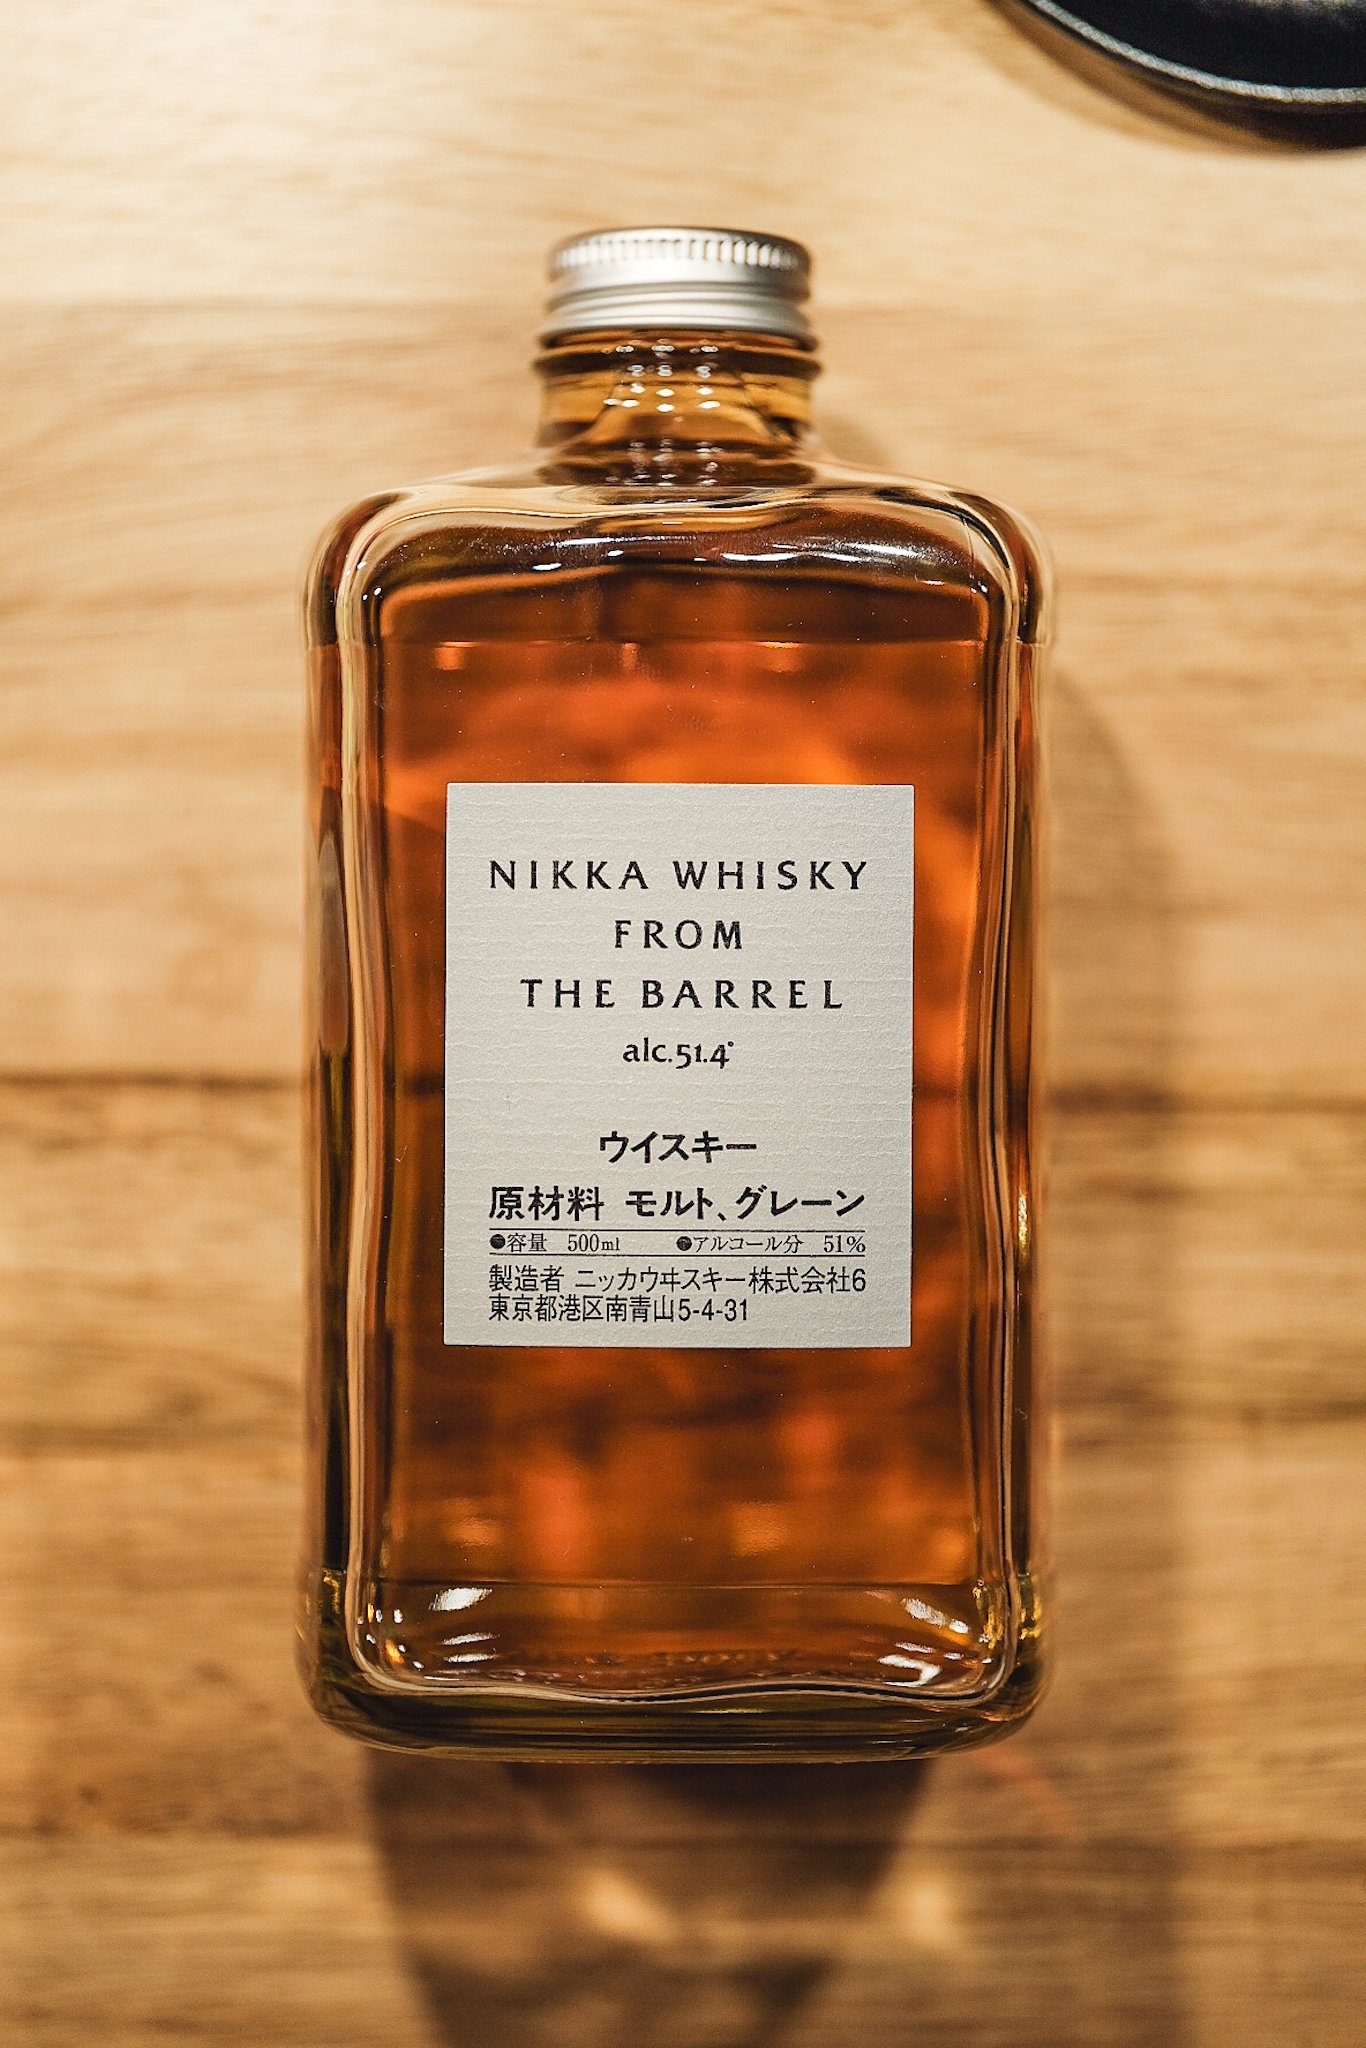 Nikka Whisky From The Barrel Japanese Whisky - Blended